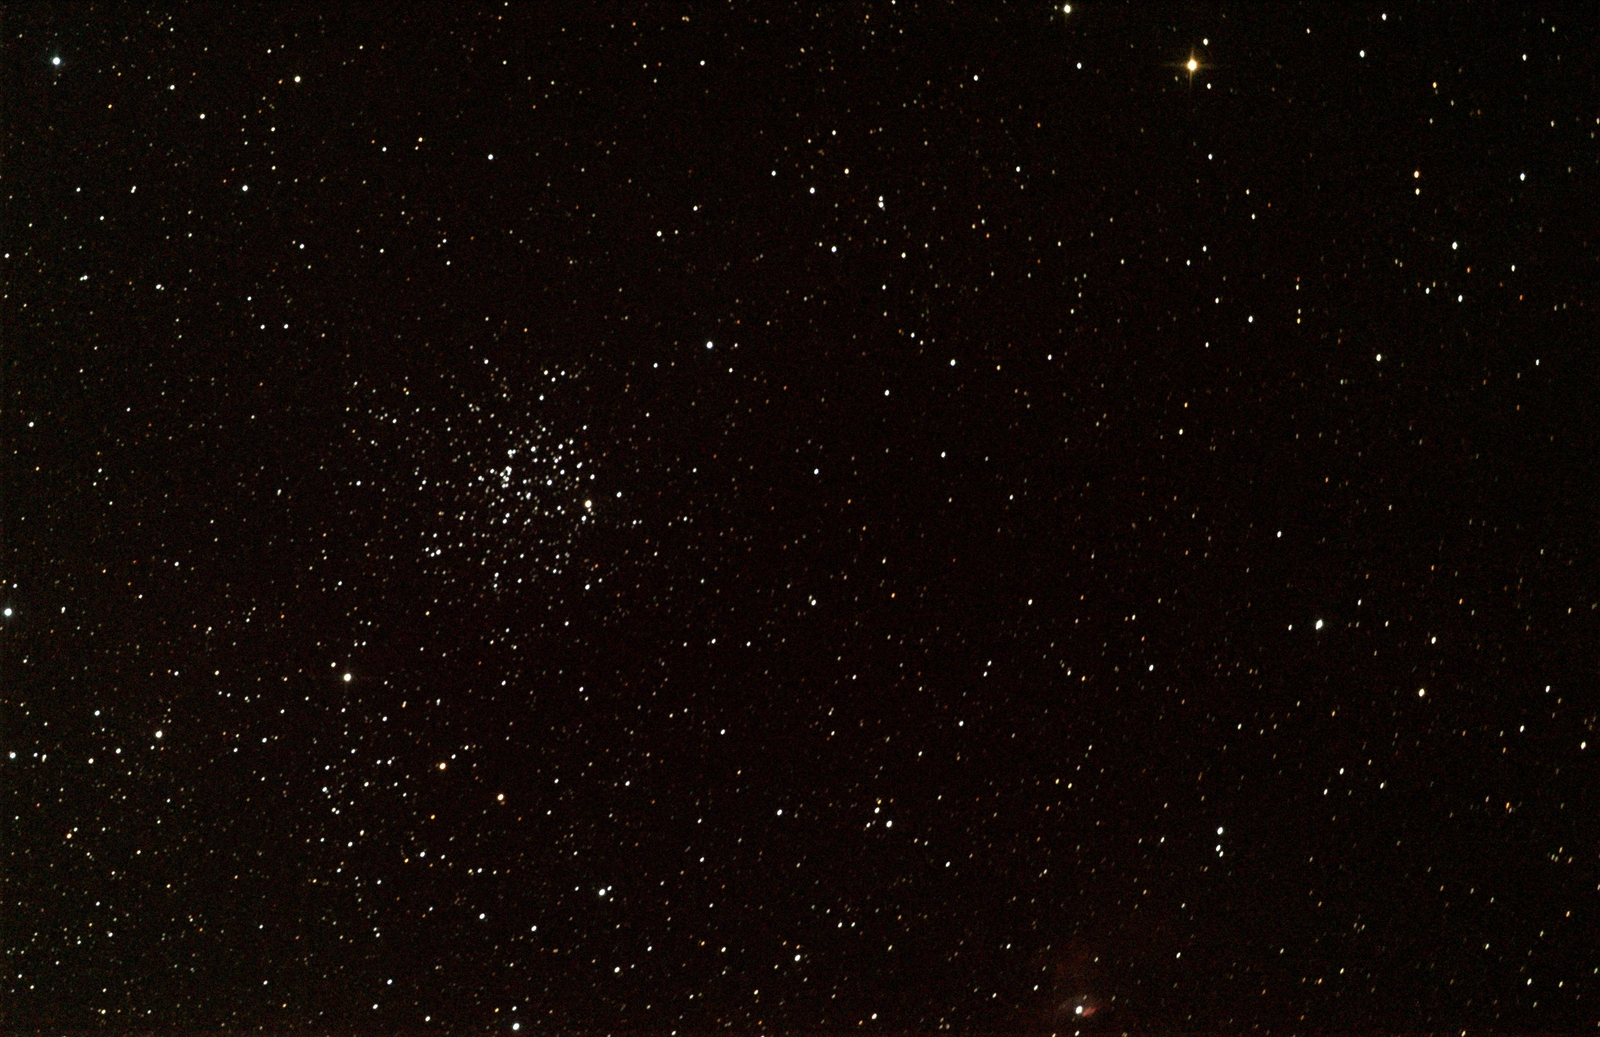 M52 in Cassiopeia